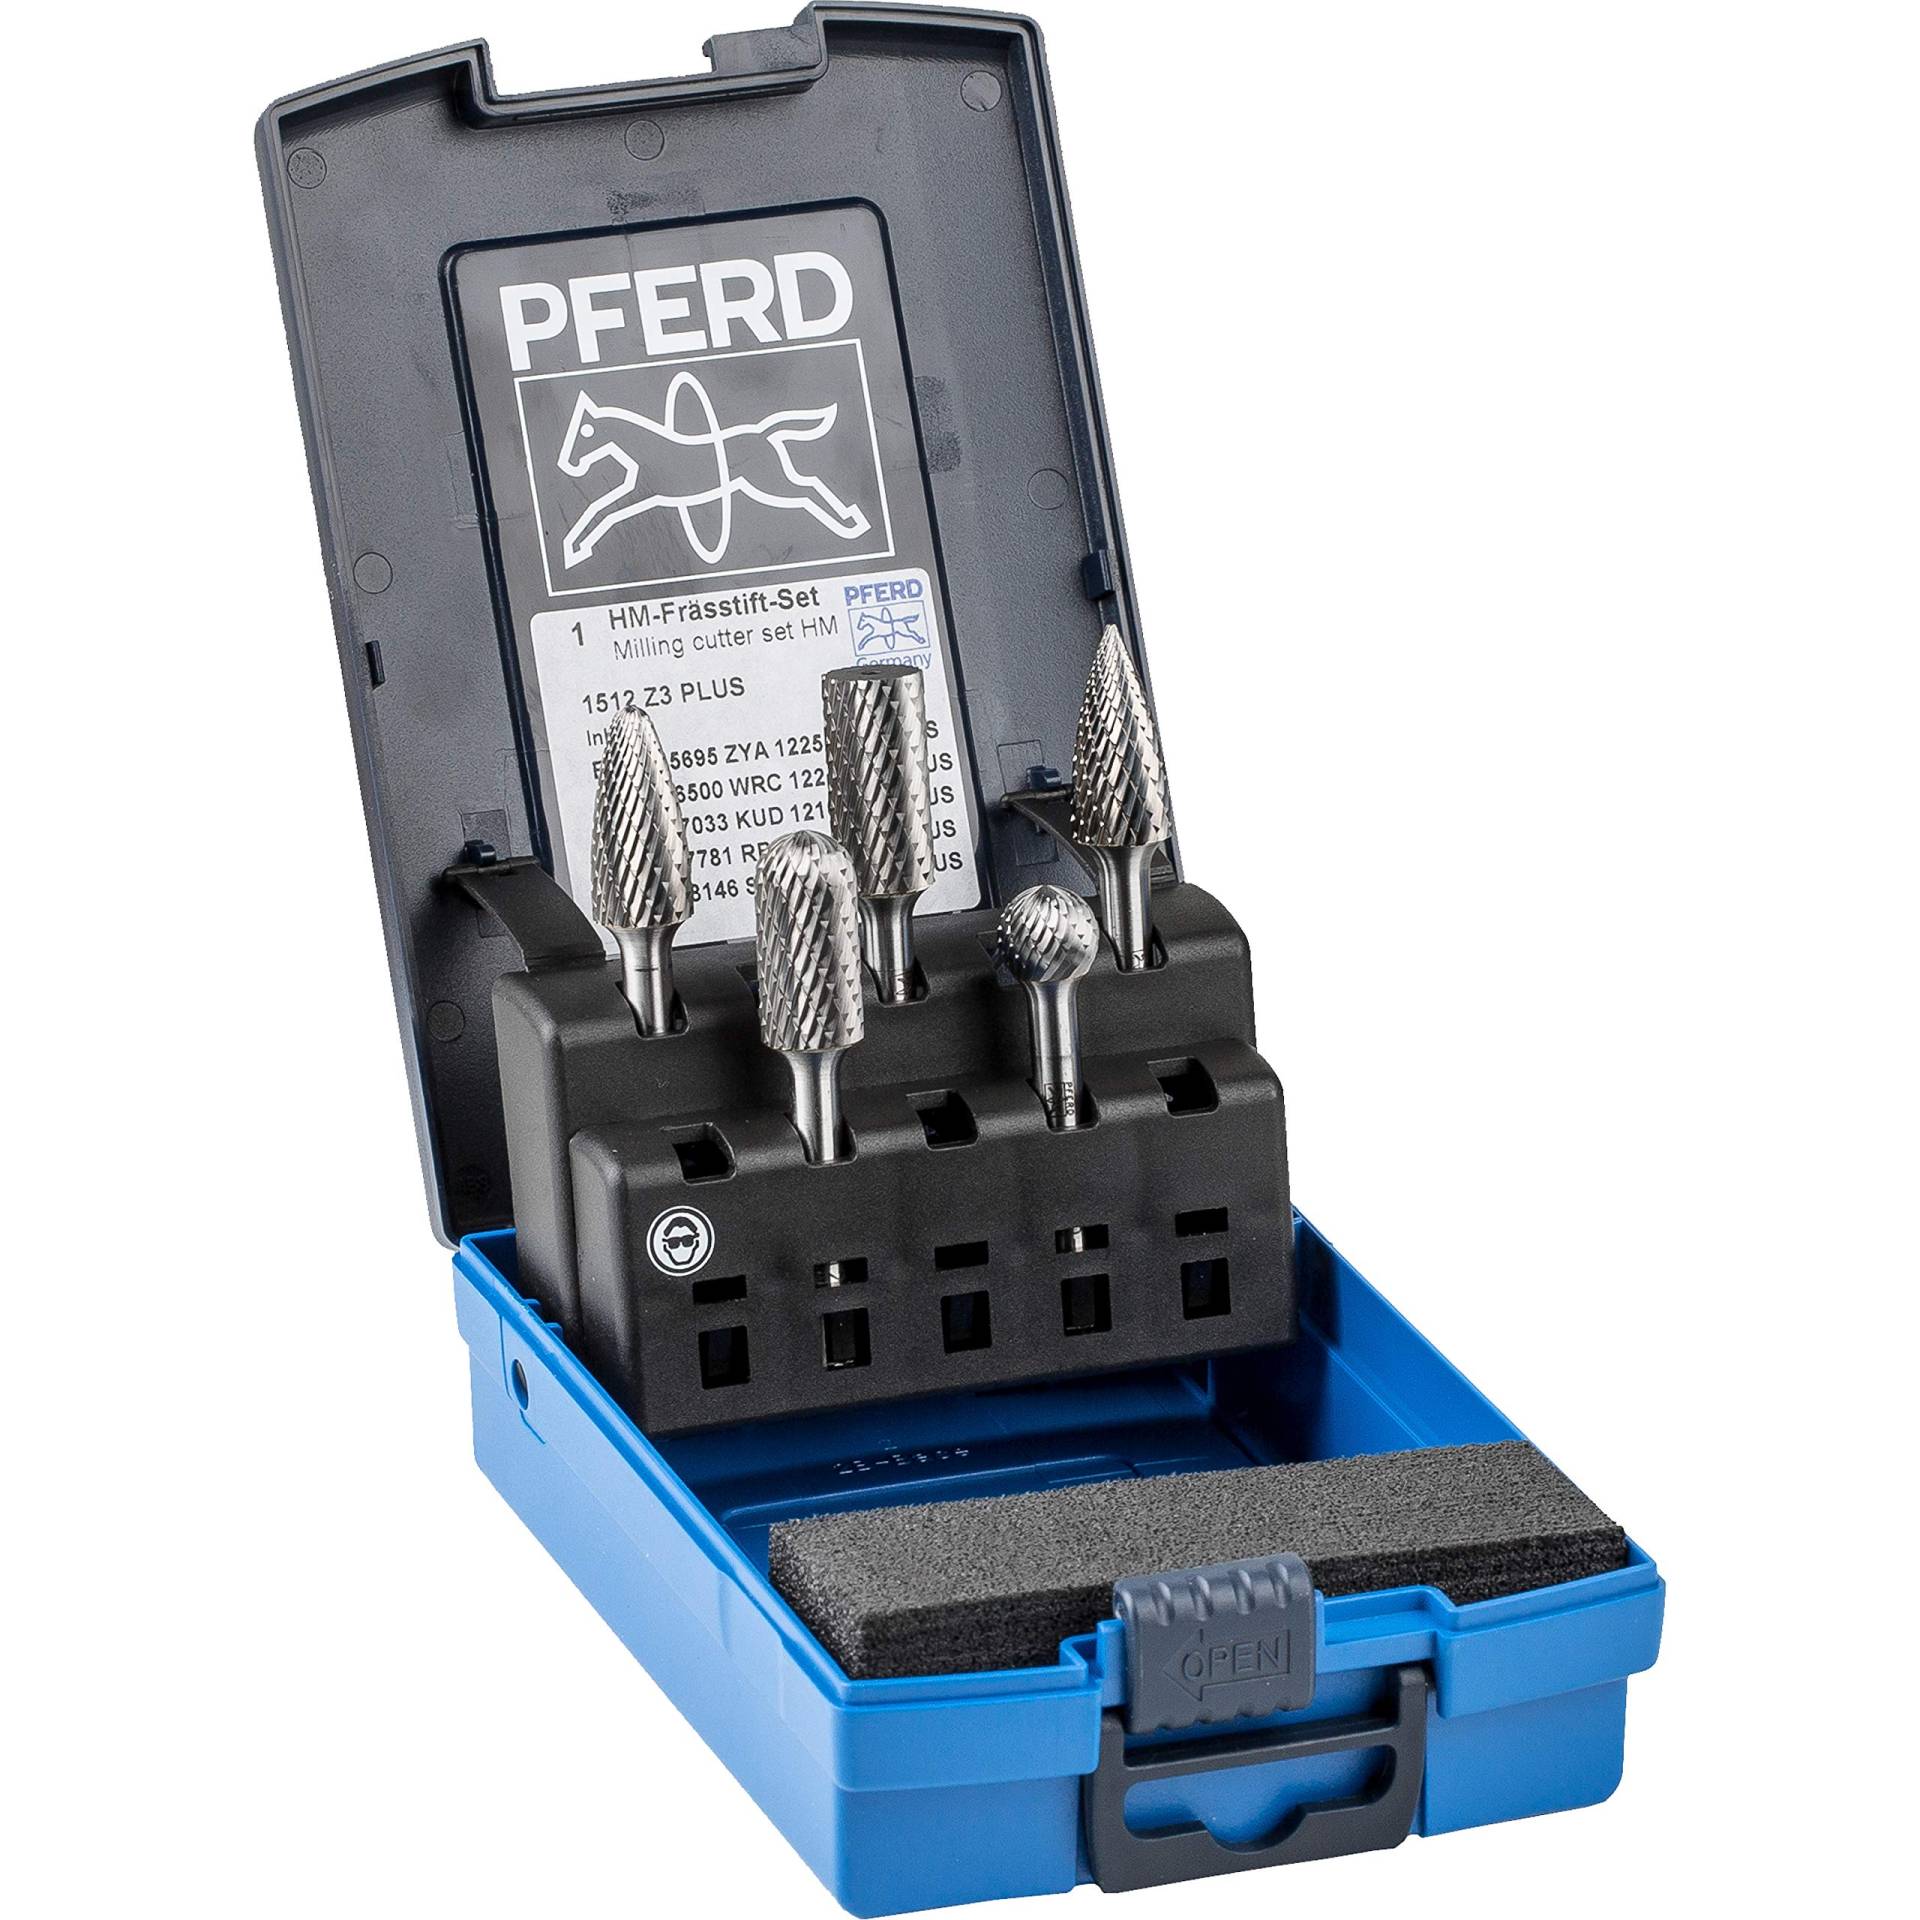 PFERD HM-Frässtift-Set, 5-teilig, Zahnung 3 PLUS, Schaft-ø 6 mm, 21901512 – für universelle Anwendungen auf den wichtigsten industriell verwendeten Werkstoffen von PFERD